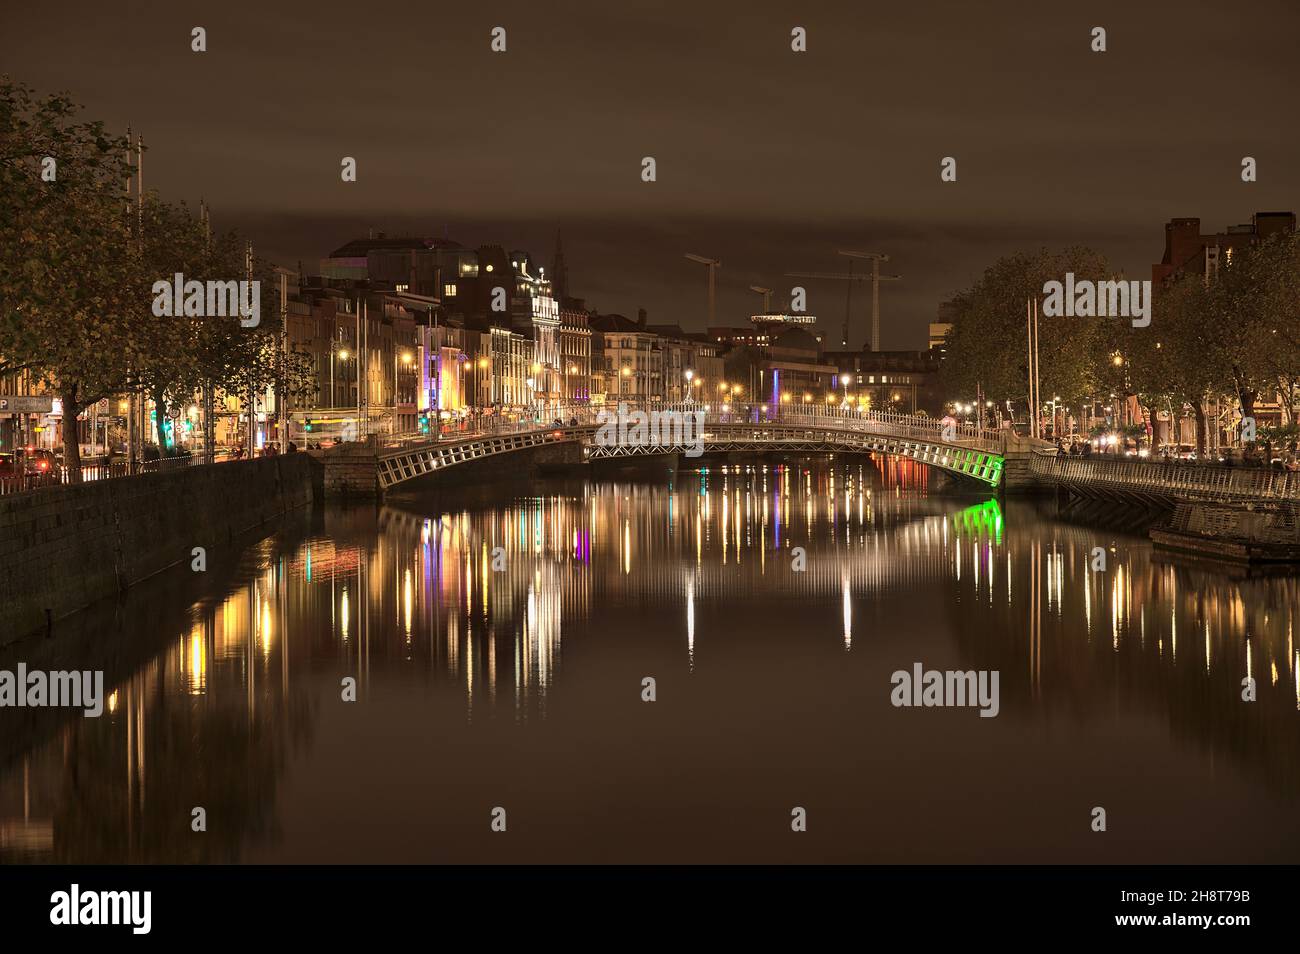 Dublin, Irlande - 13 novembre 2021 : magnifique vue en soirée sur la rivière Liffey et le pont éclairé Ha'penny.Rénovation de la plage en fonte du XIXe siècle Banque D'Images